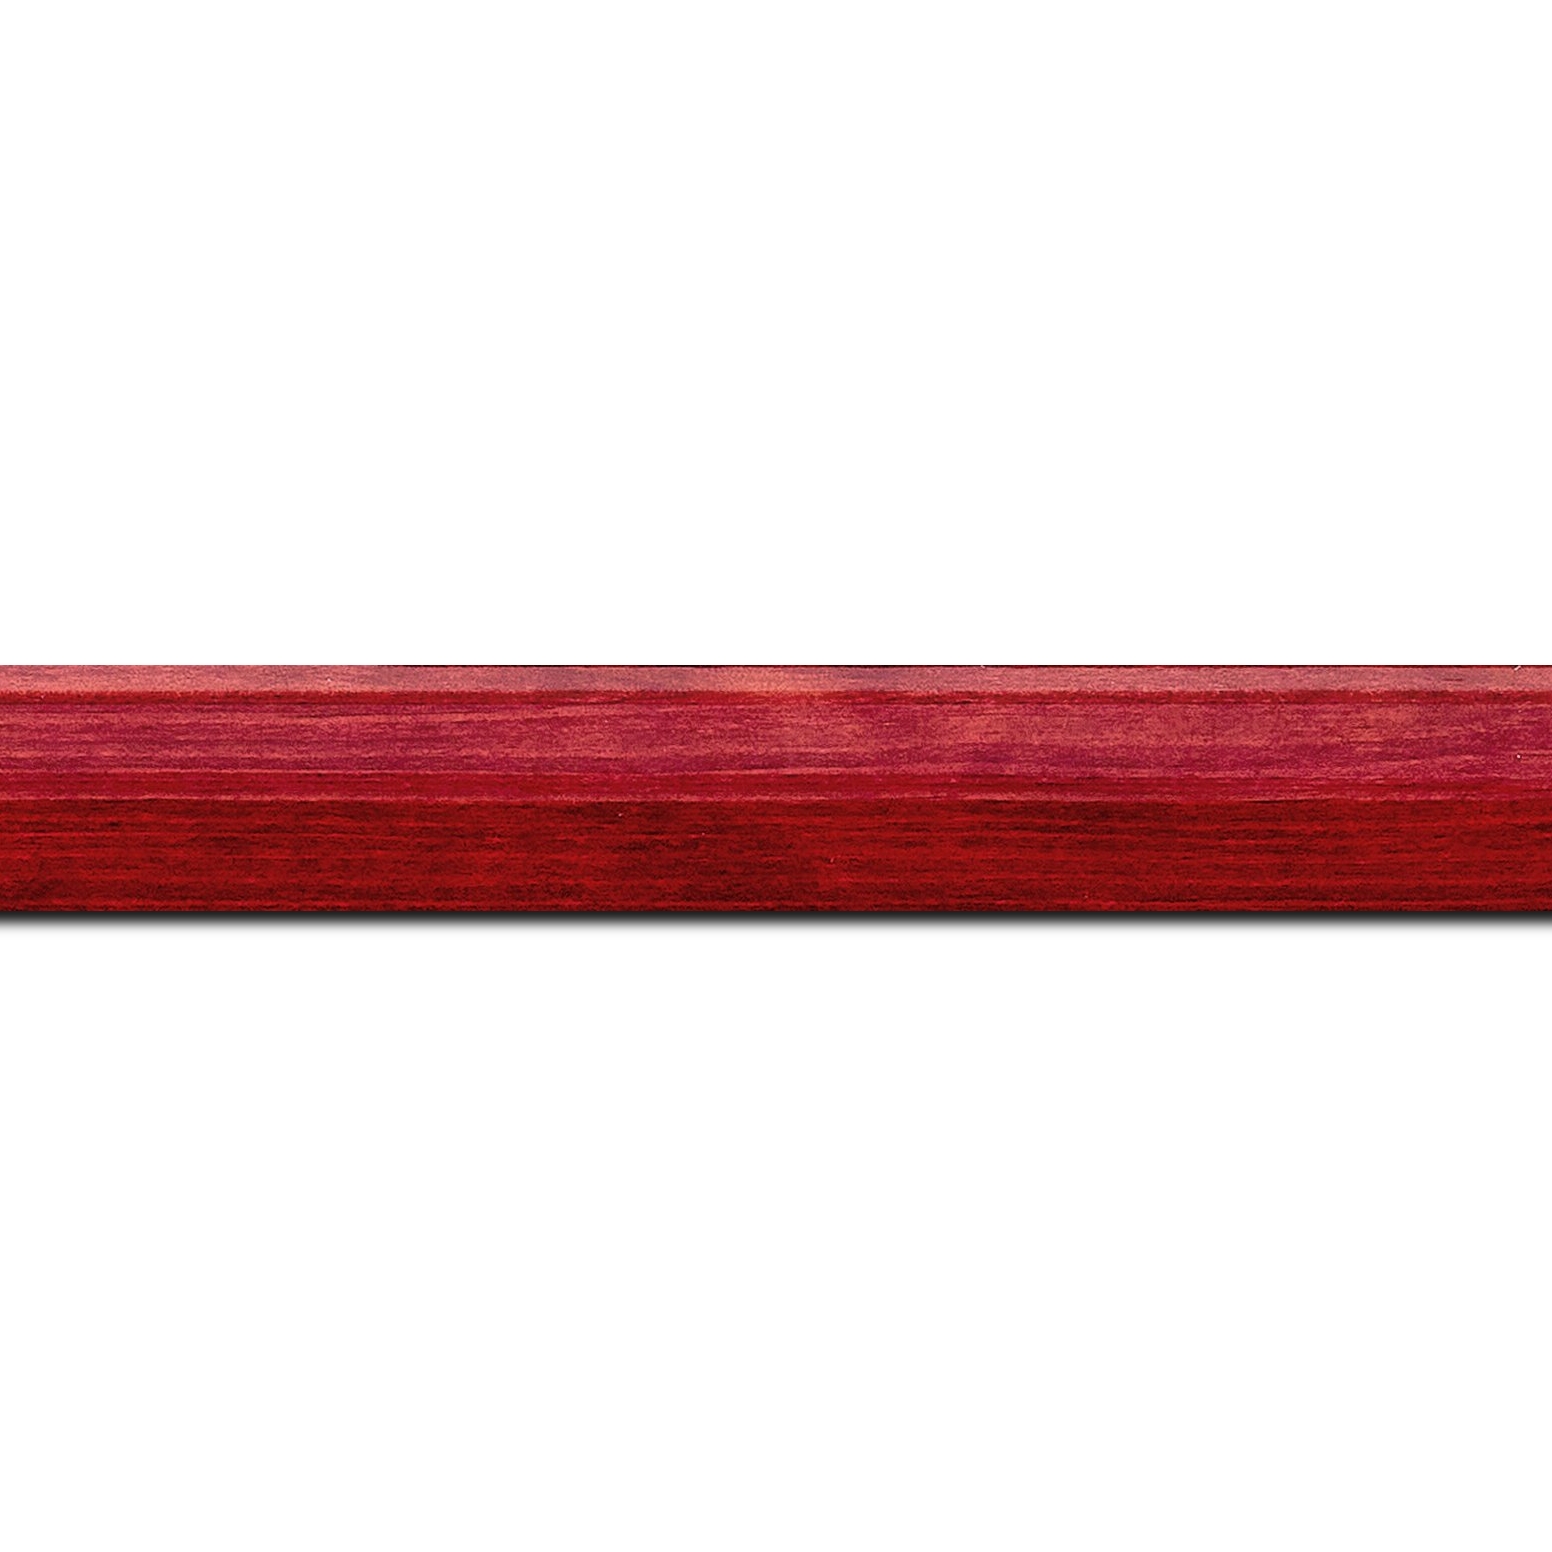 Pack par 12m, bois profil arrondi en pente plongeant largeur 2.4cm couleur rouge cerise finition vernis brillant,veine du bois  apparent (pin) ,  (longueur baguette pouvant varier entre 2.40m et 3m selon arrivage des bois)